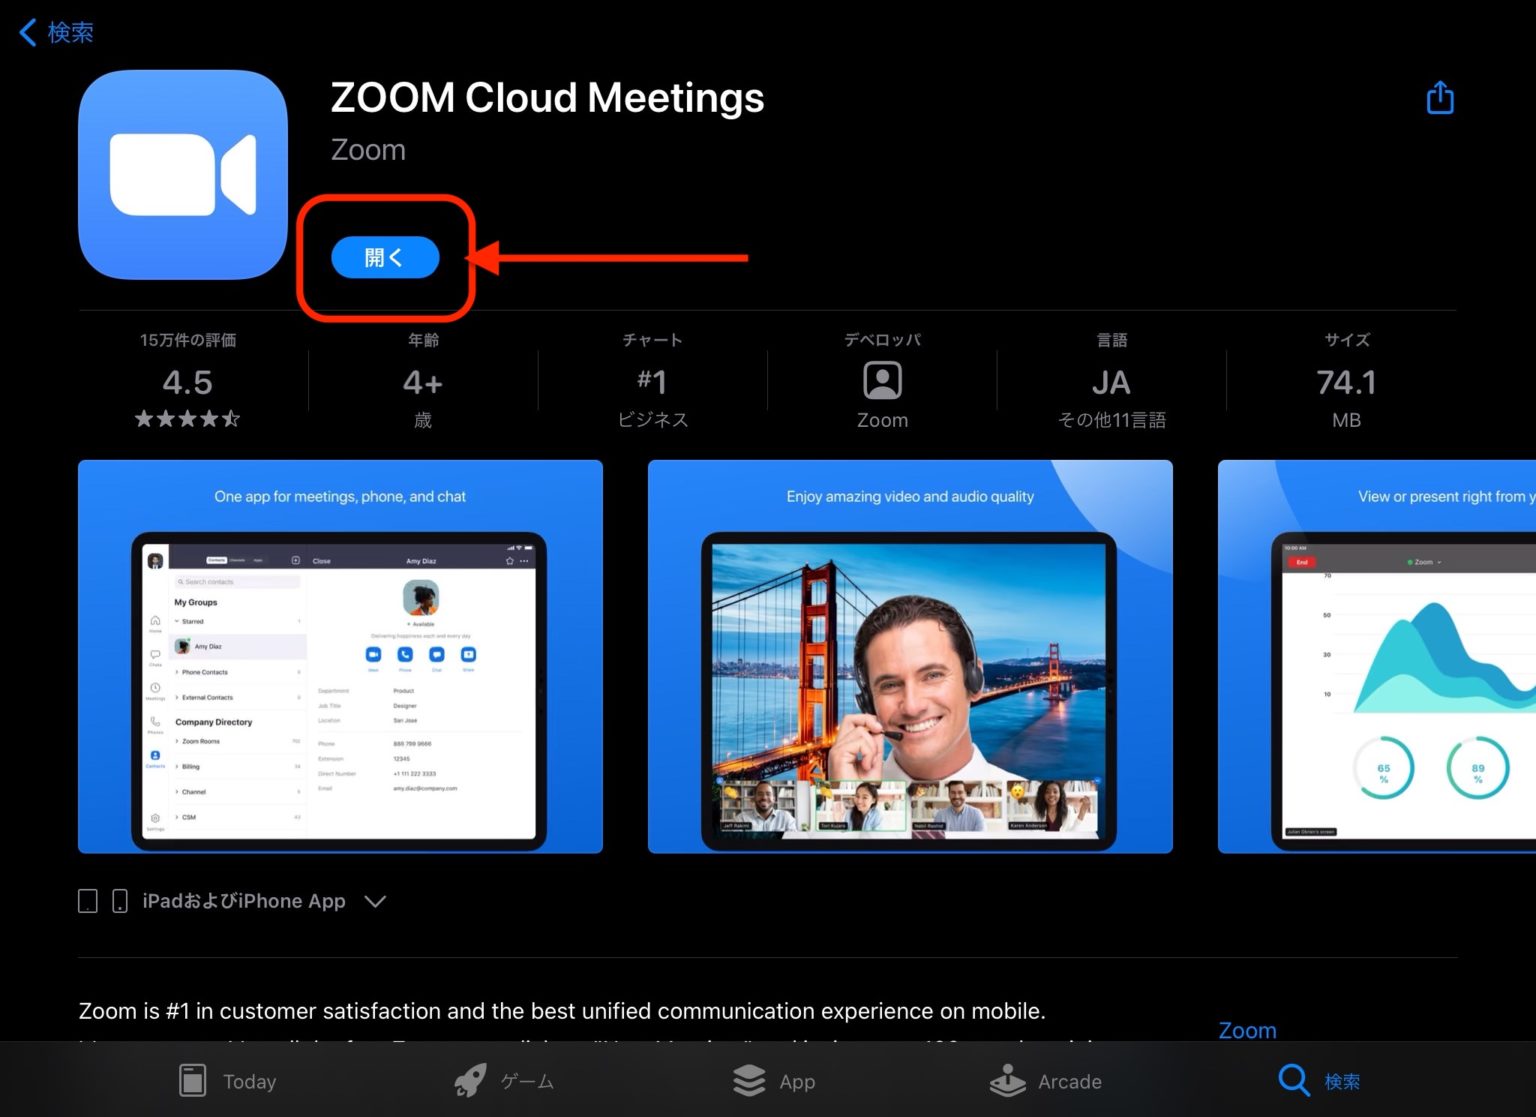 zoom cloud meetings ipad download link